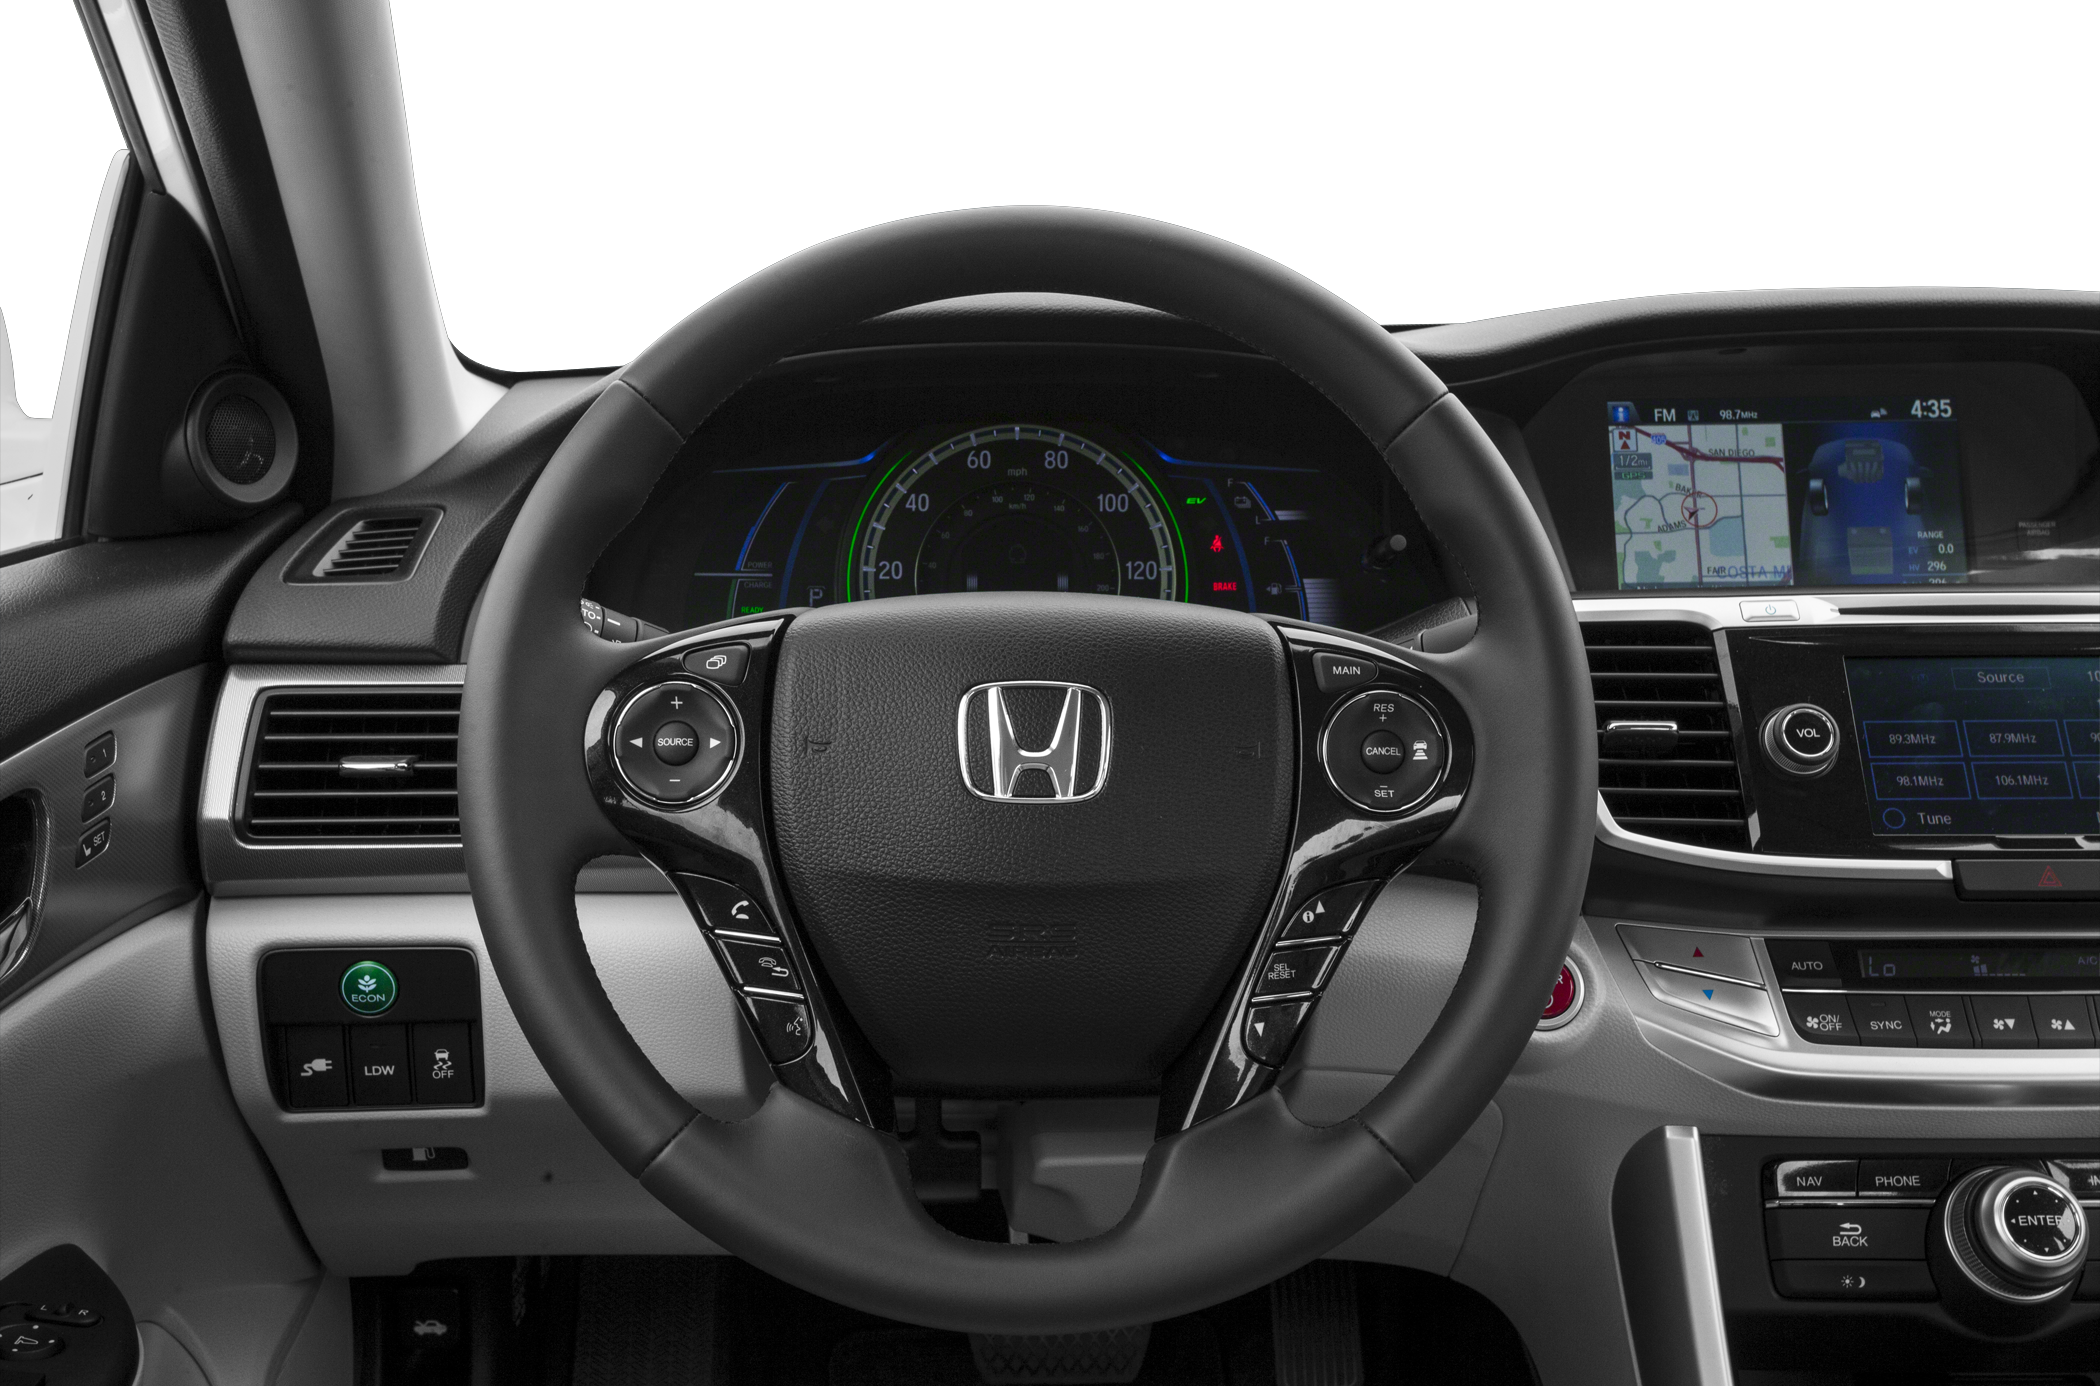 2014 Honda Accord Plug-In Hybrid